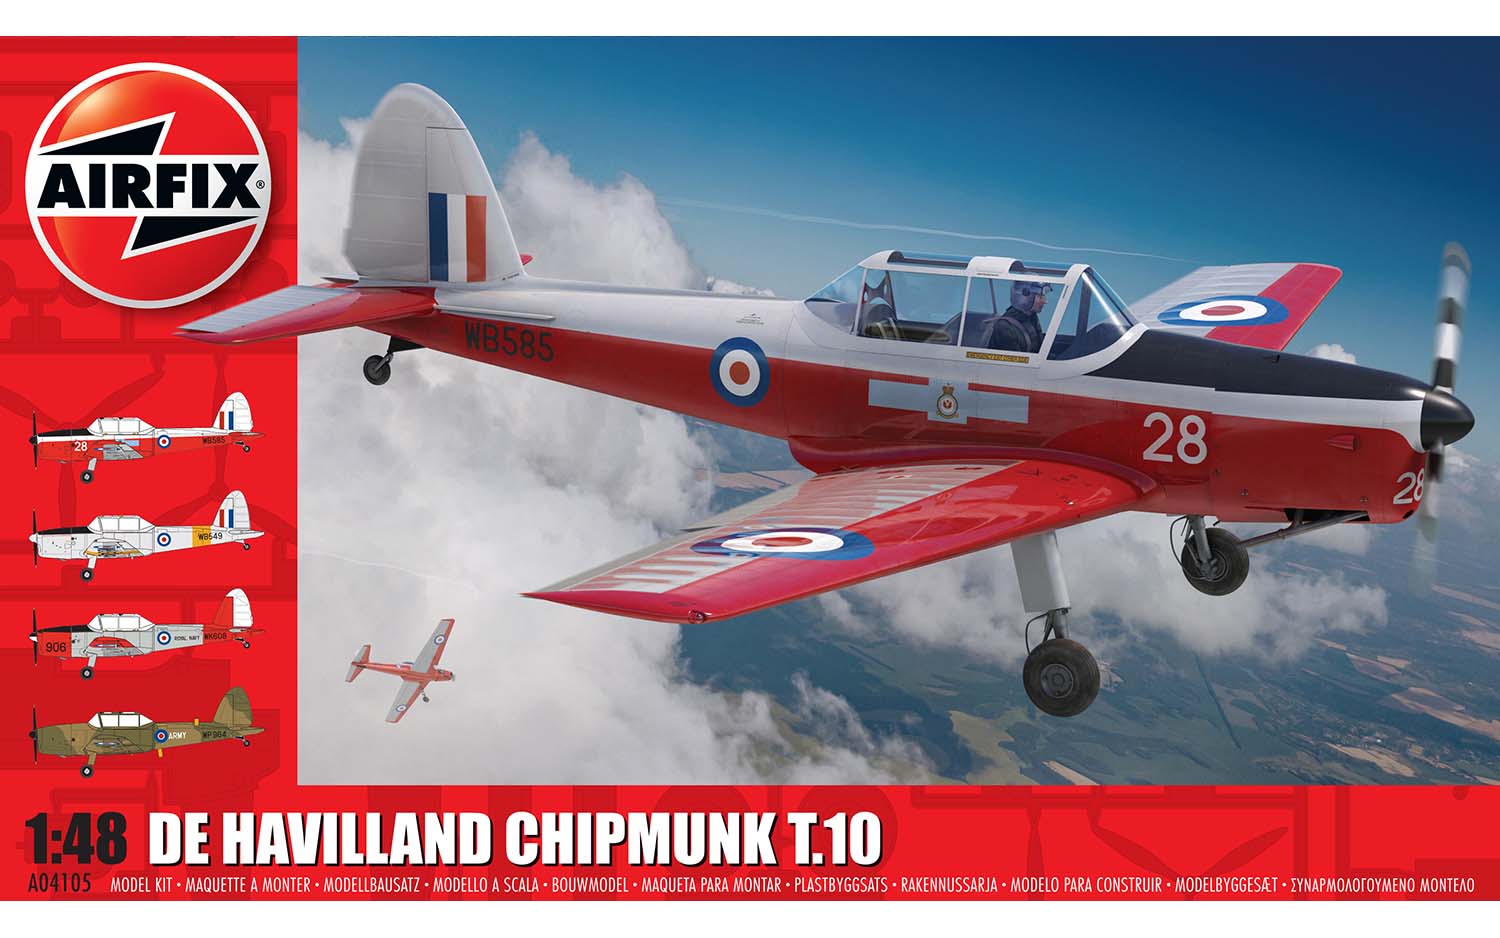 airfix-A04105-1-De-Havilland-Chipmunk-T-10-Trainer-Royal-Air-Force-historic-vintage-british-plane